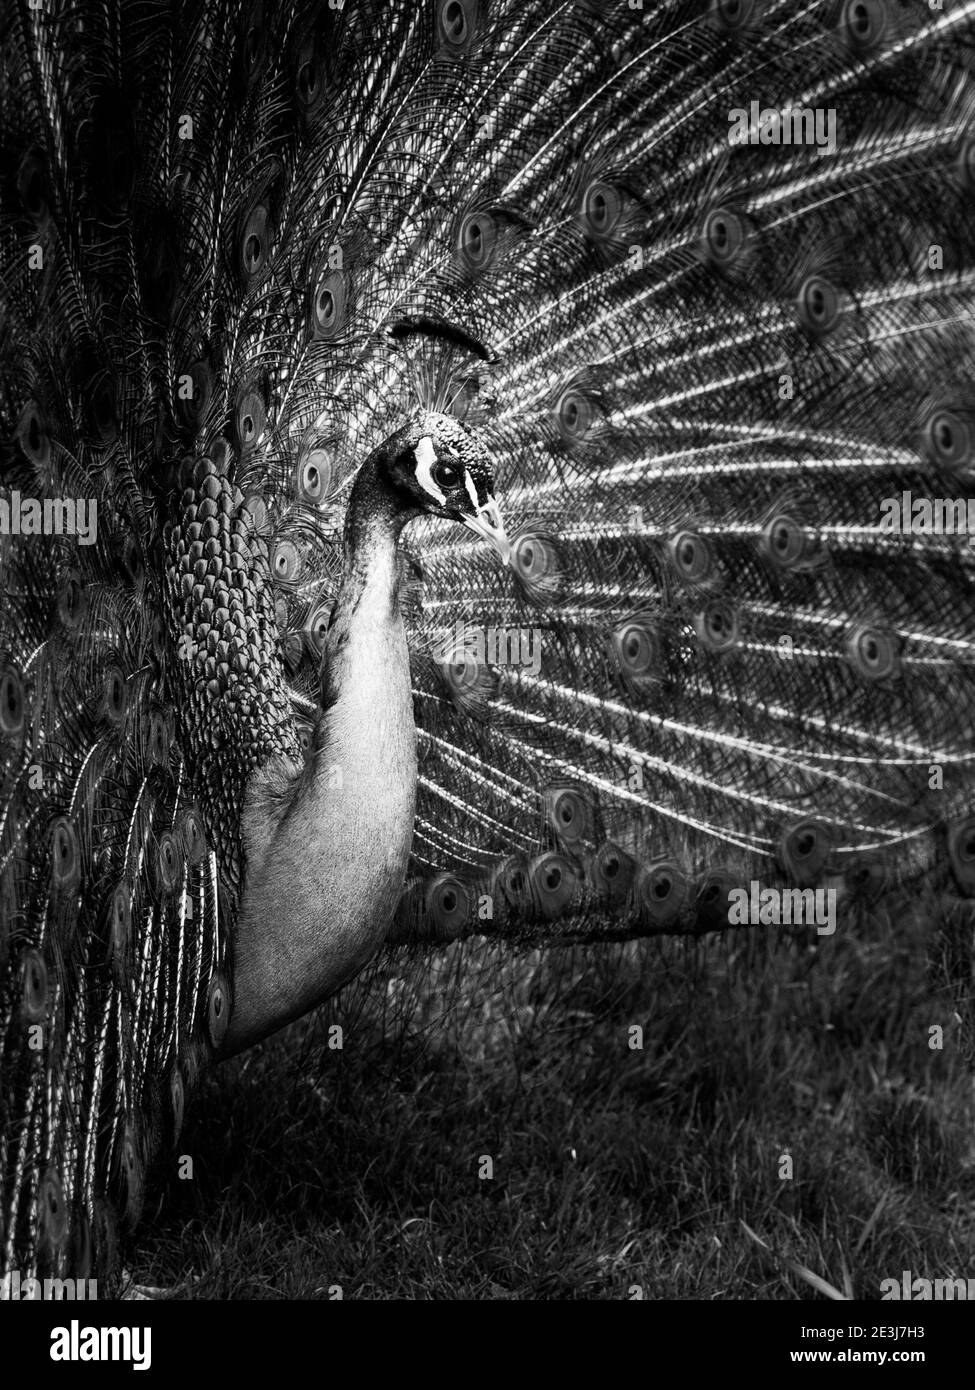 Primo piano ritratto di pavone con piume sparse. Immagine chiave bassa. Immagine in bianco e nero. Foto Stock